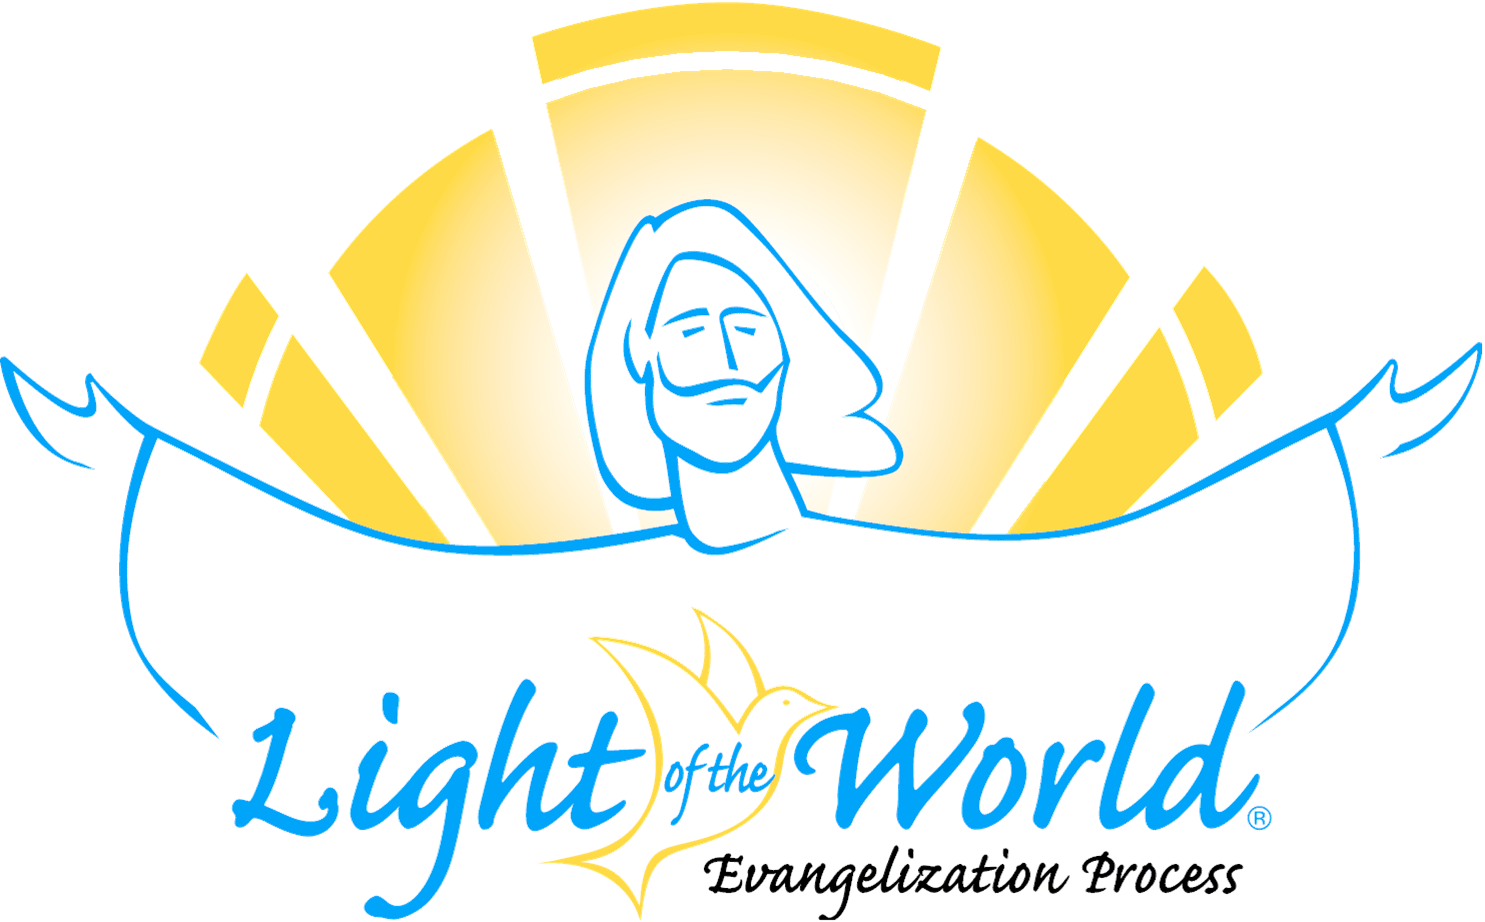 World of Light Blue Logo - Light of the World – St. James